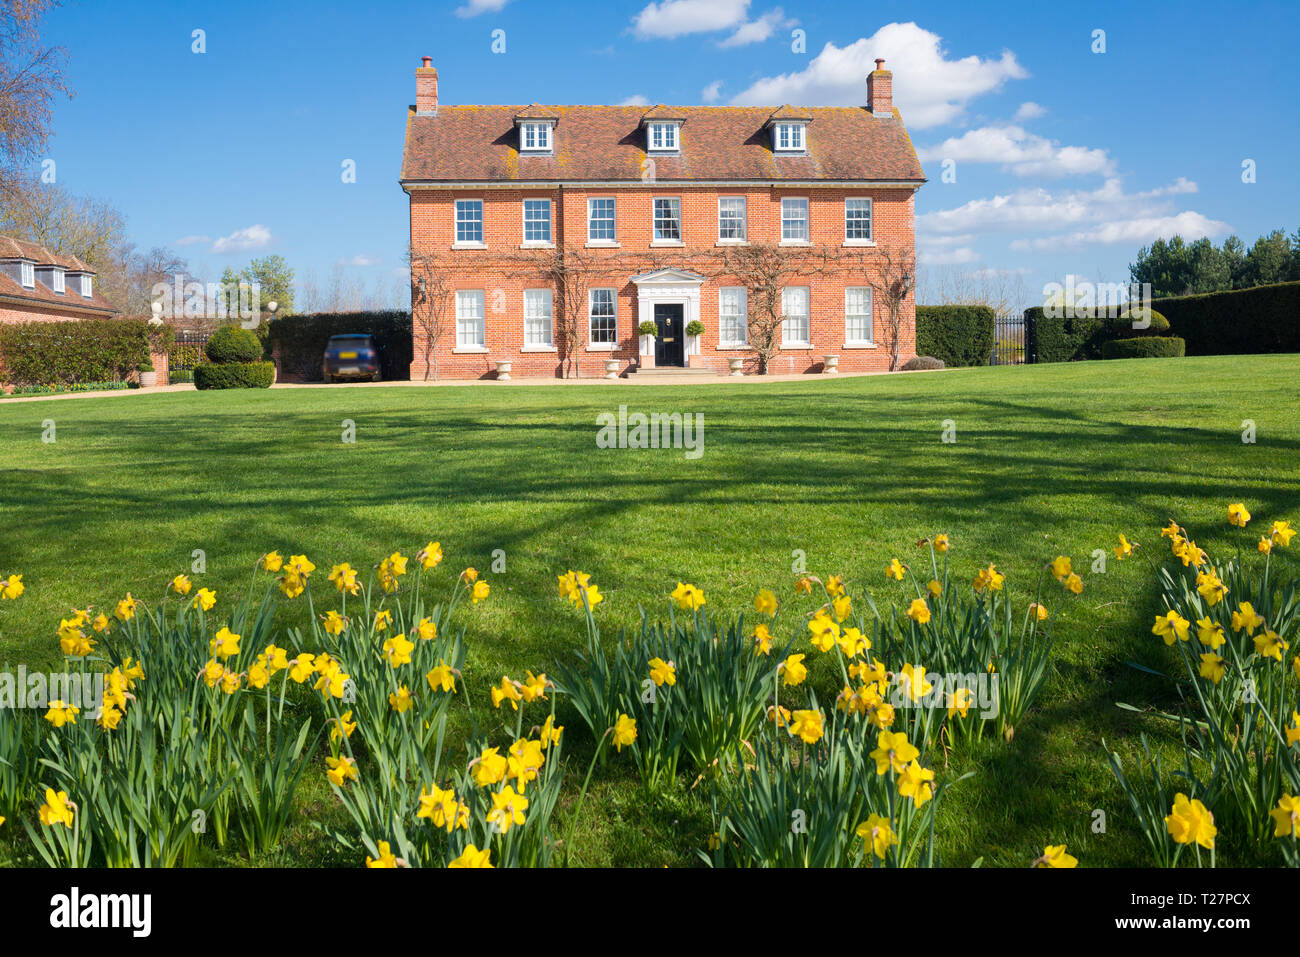 Elegante englische Country Manor Herrenhaus Grad 2 Viktorianischen zeit Immobilien in rotem Backstein aufgeführt. Vorderansicht mit großem Garten, grünen Rasen und daffod Stockfoto